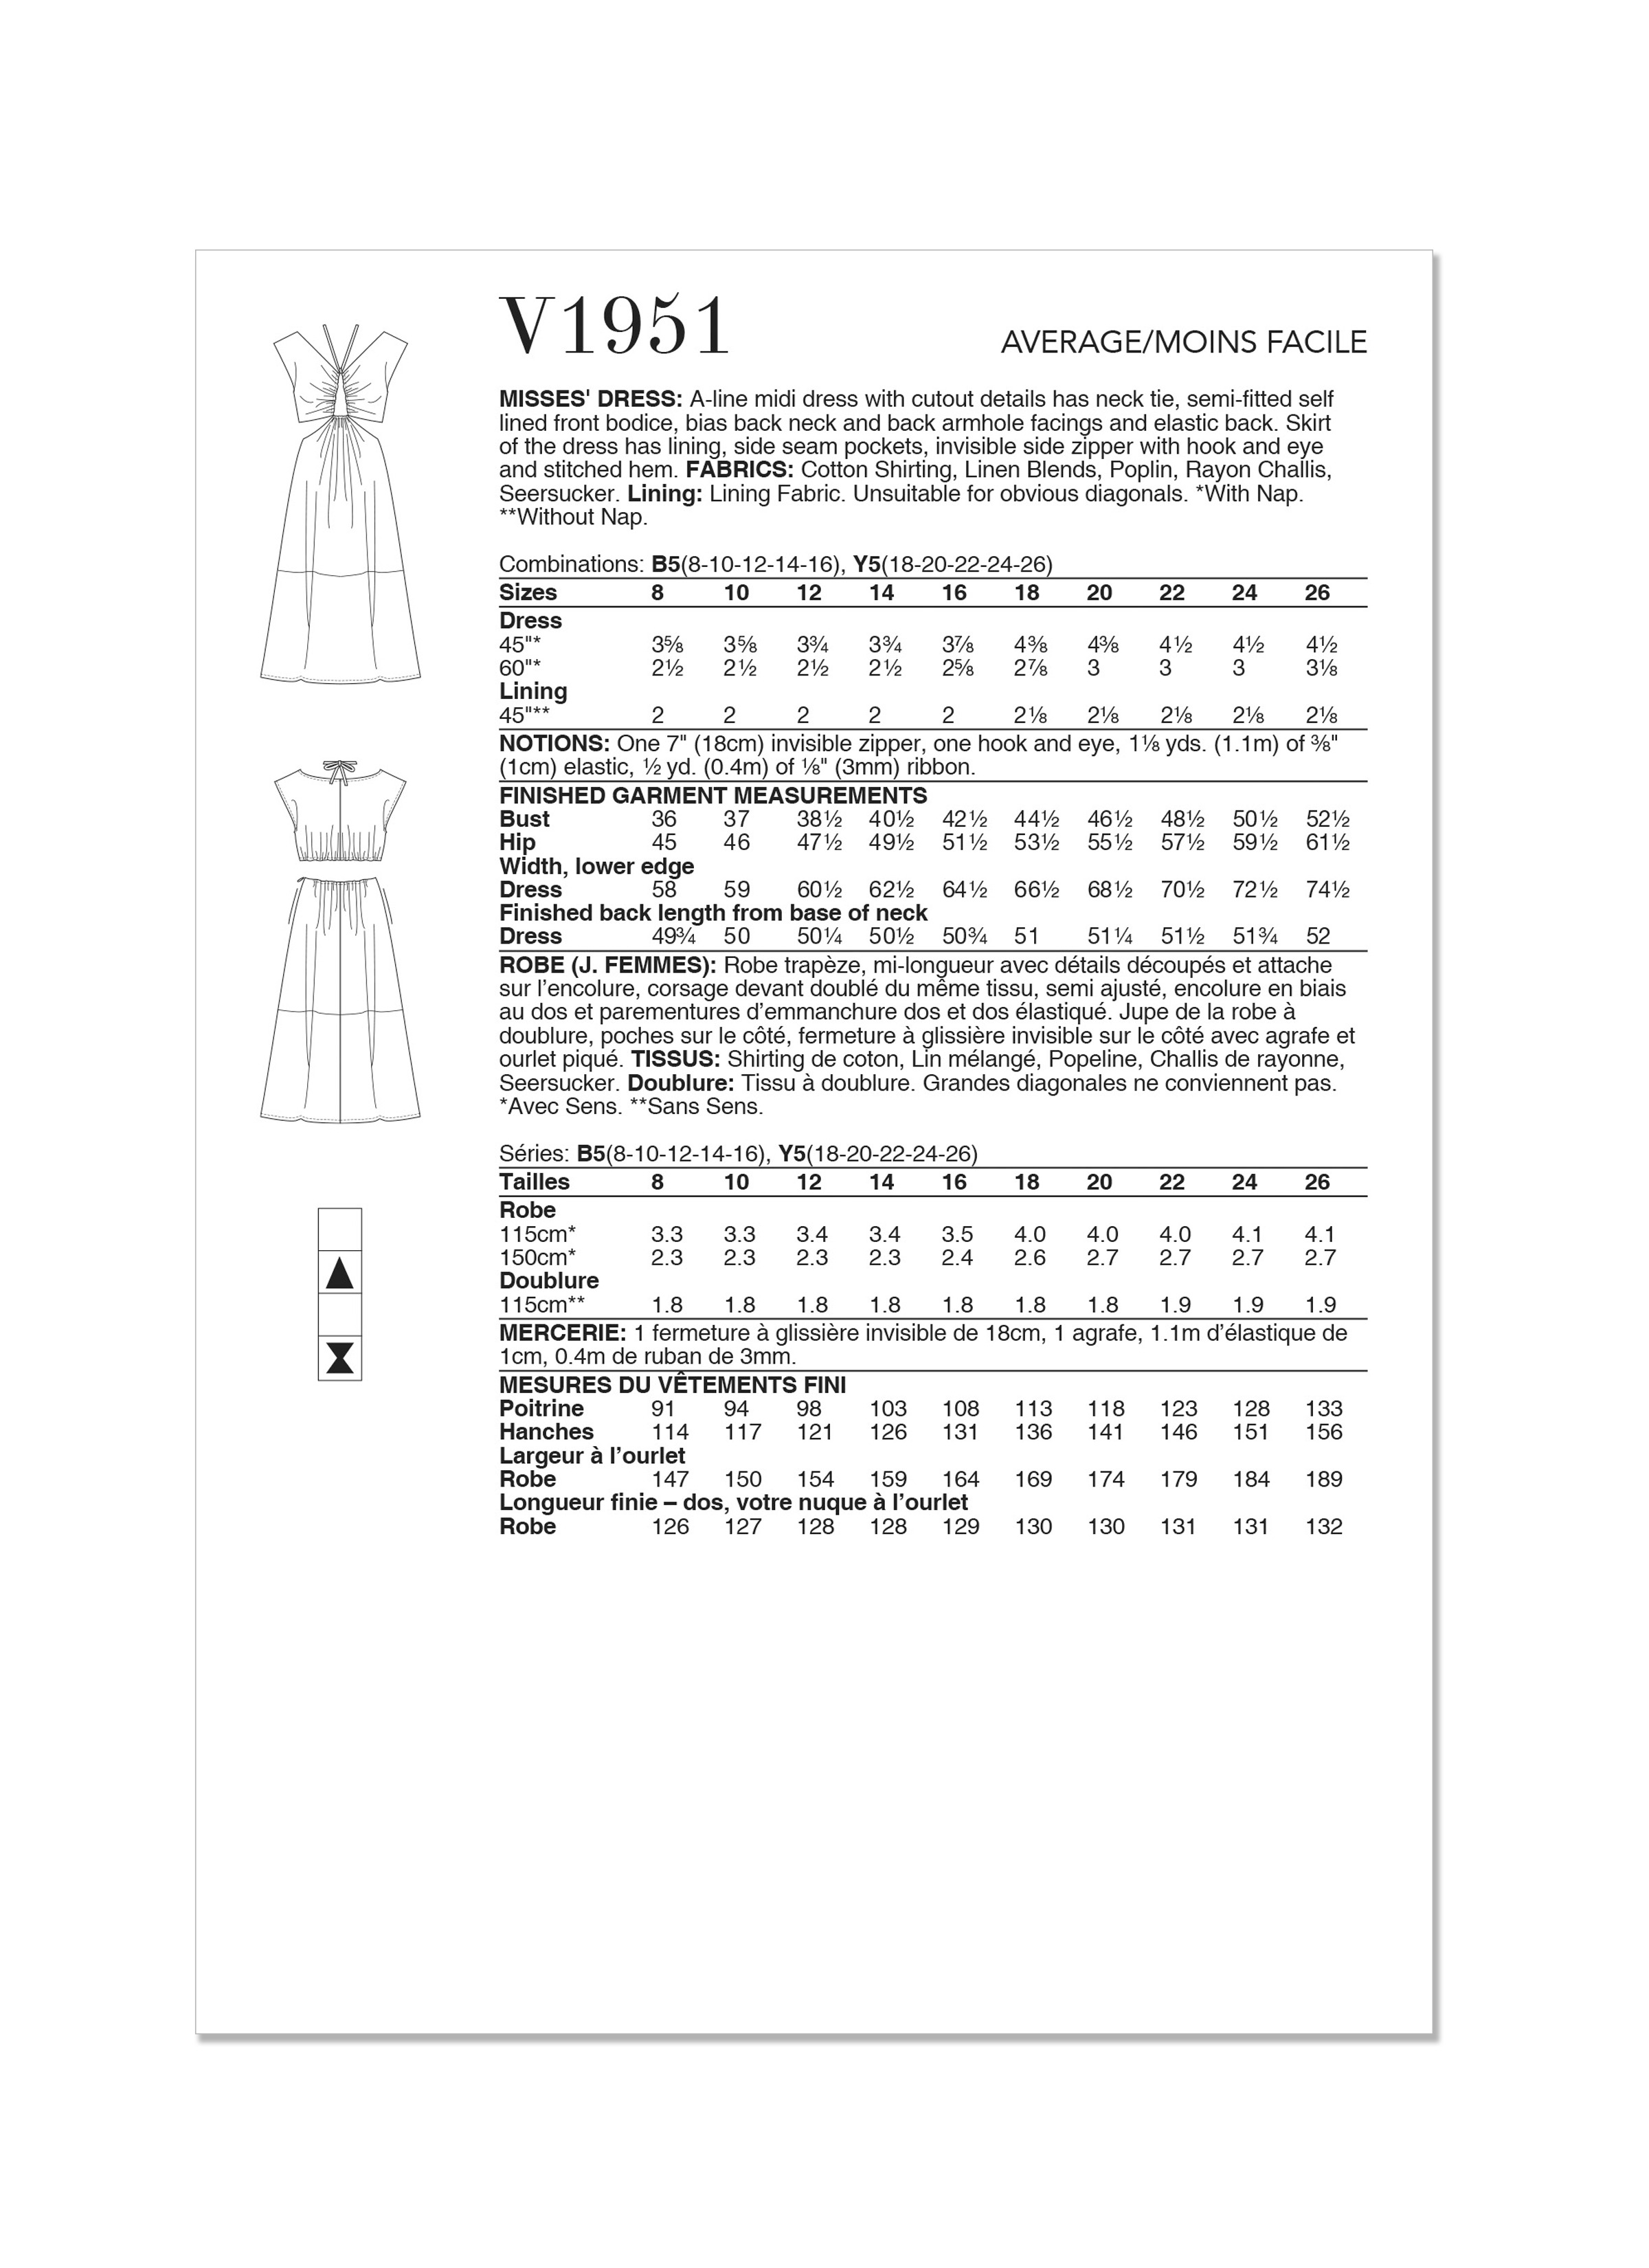 Vogue Dress V1951 - The Fold Line